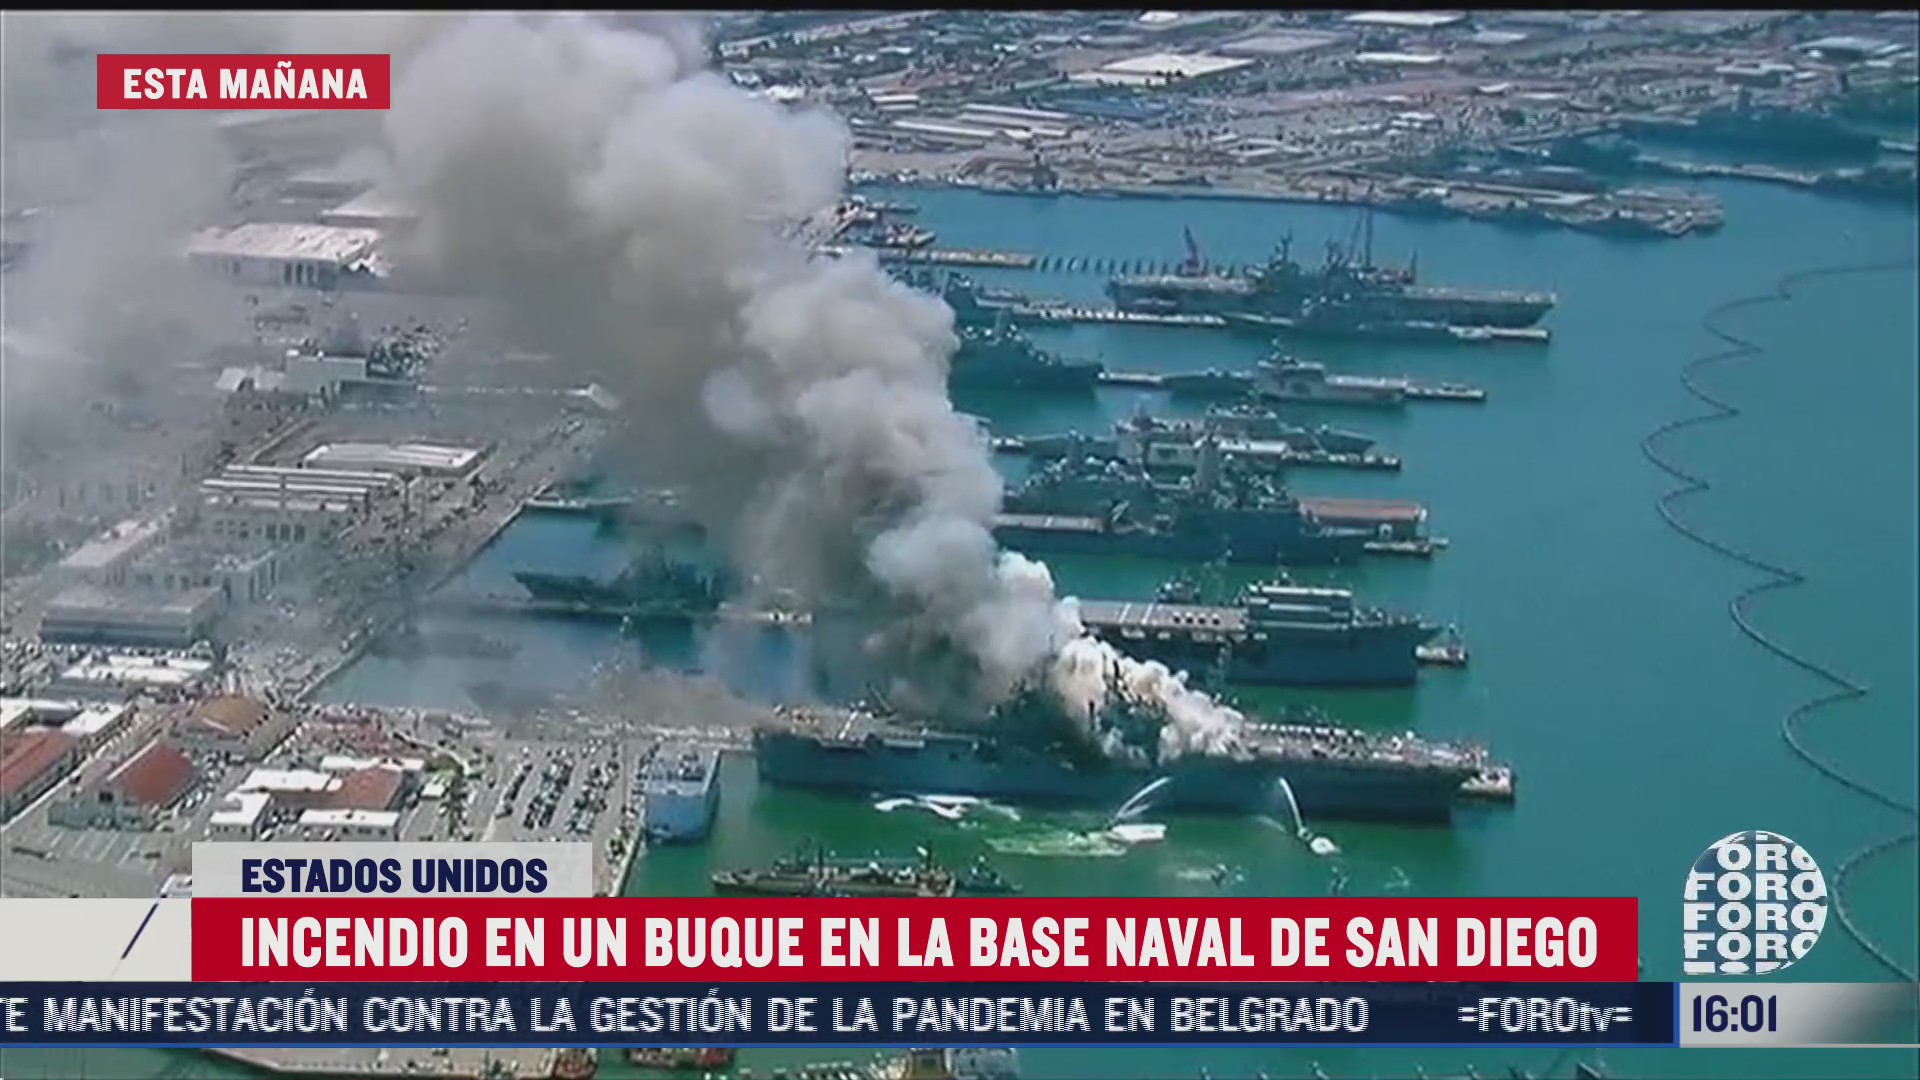 FOTO: 12 de julio 2020, se registra incendio en buque en la base naval de san diego